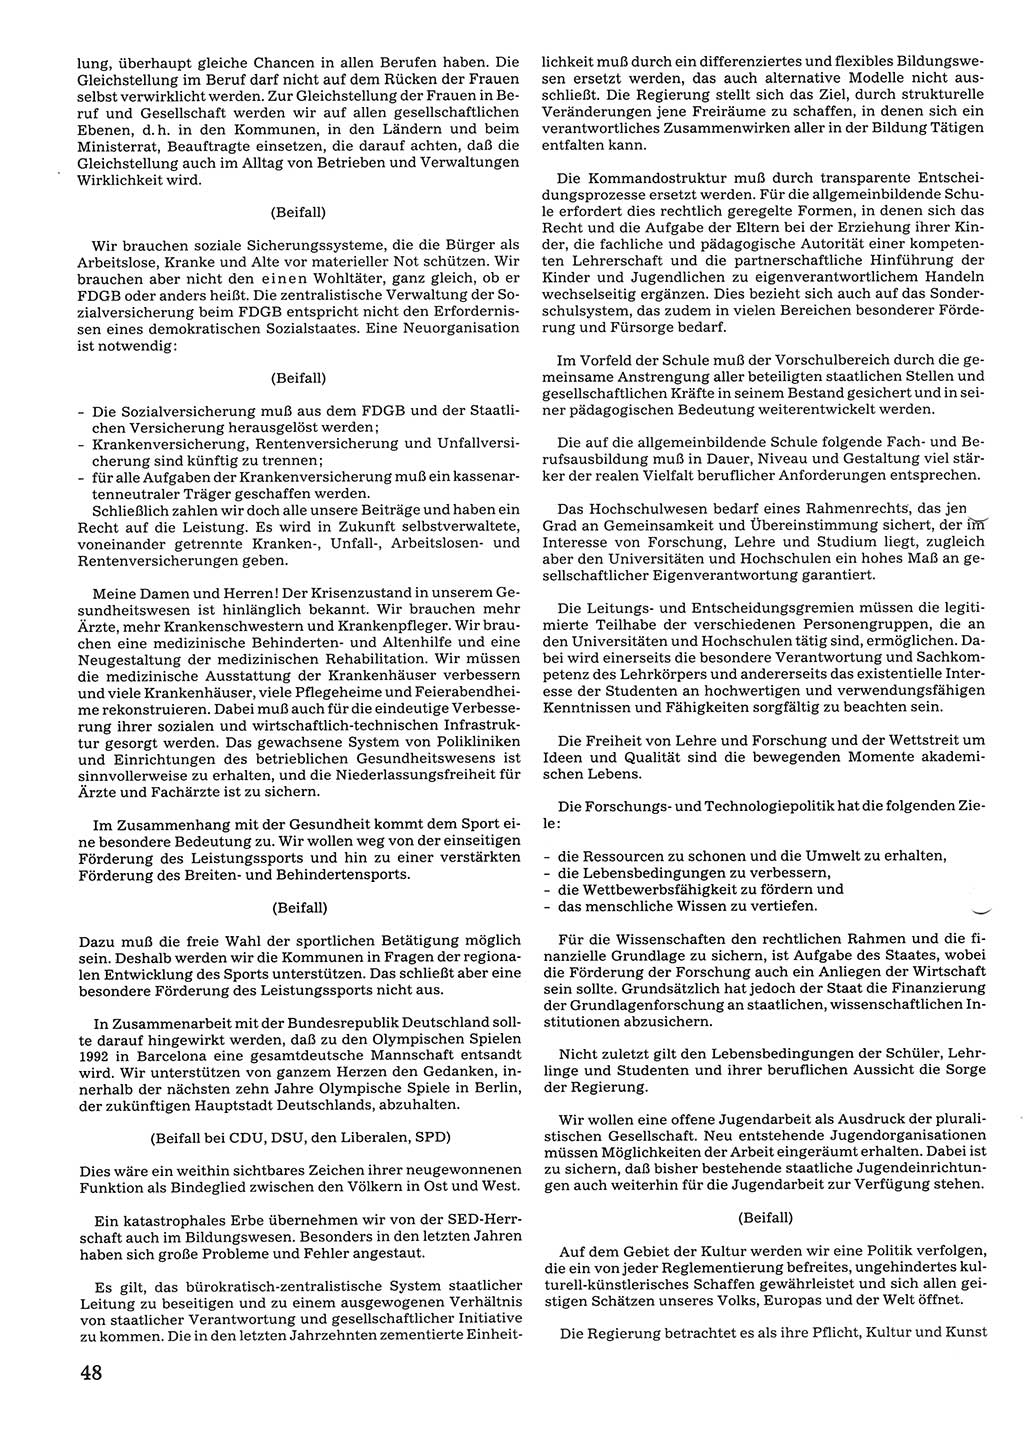 Tagungen der Volkskammer (VK) der Deutschen Demokratischen Republik (DDR), 10. Wahlperiode 1990, Seite 48 (VK. DDR 10. WP. 1990, Prot. Tg. 1-38, 5.4.-2.10.1990, S. 48)